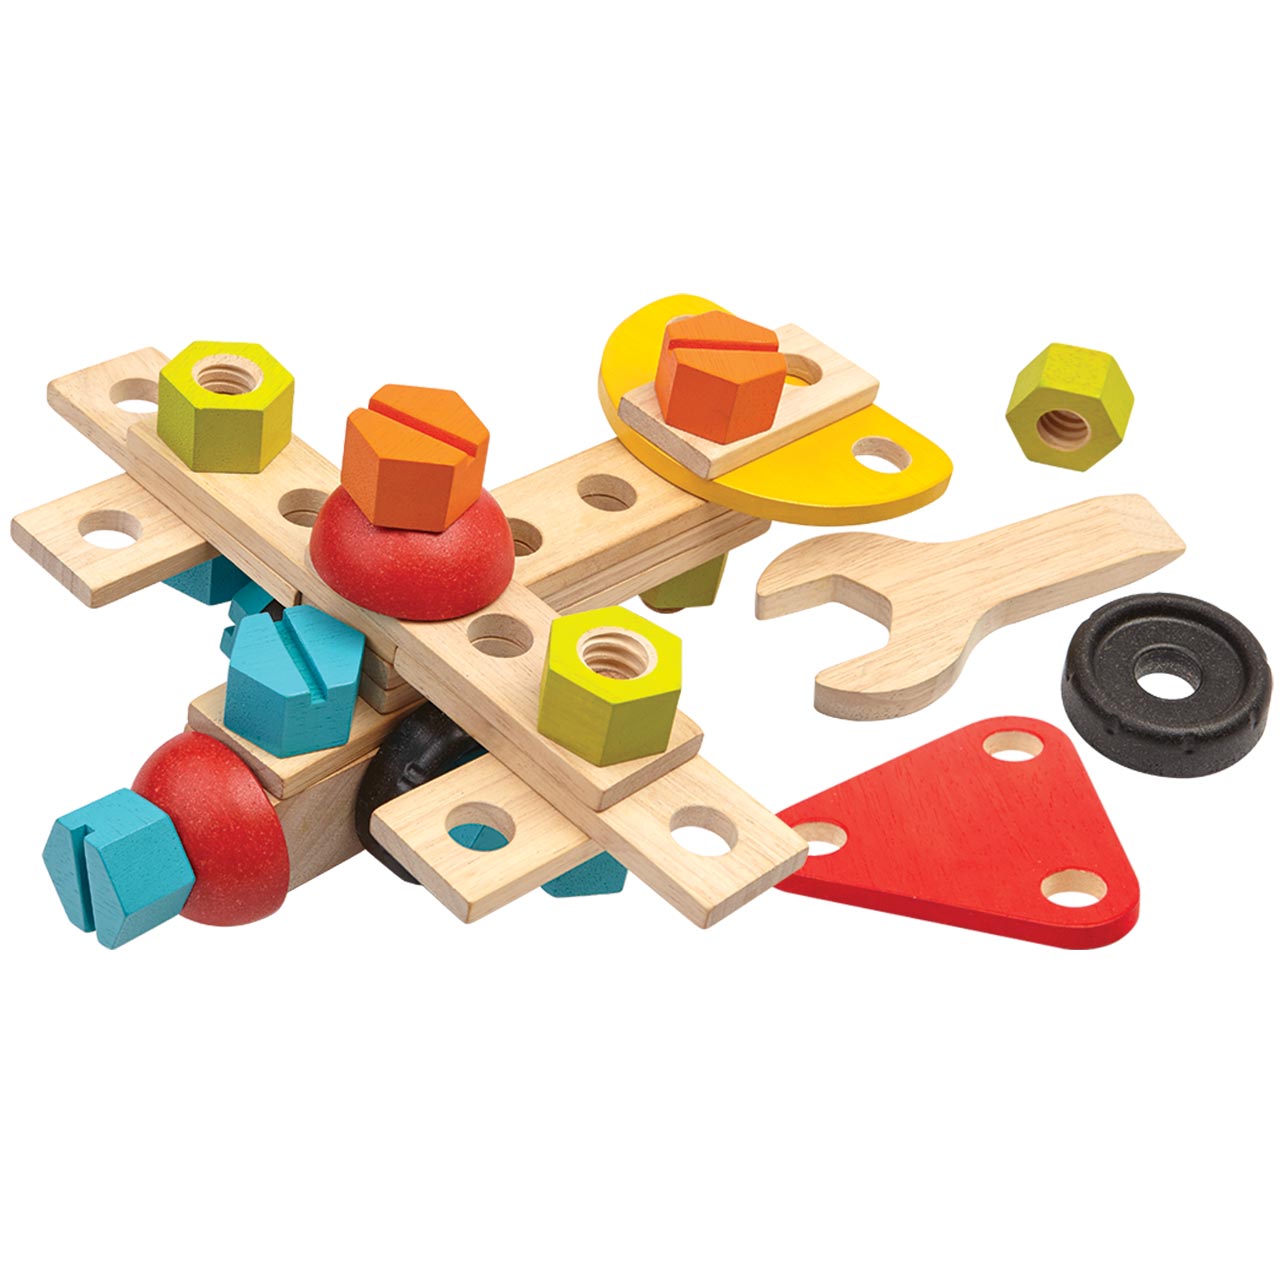 Schrauben Bausteine Konstruktionsspielzeug Ausbildung Spielzeug mit 